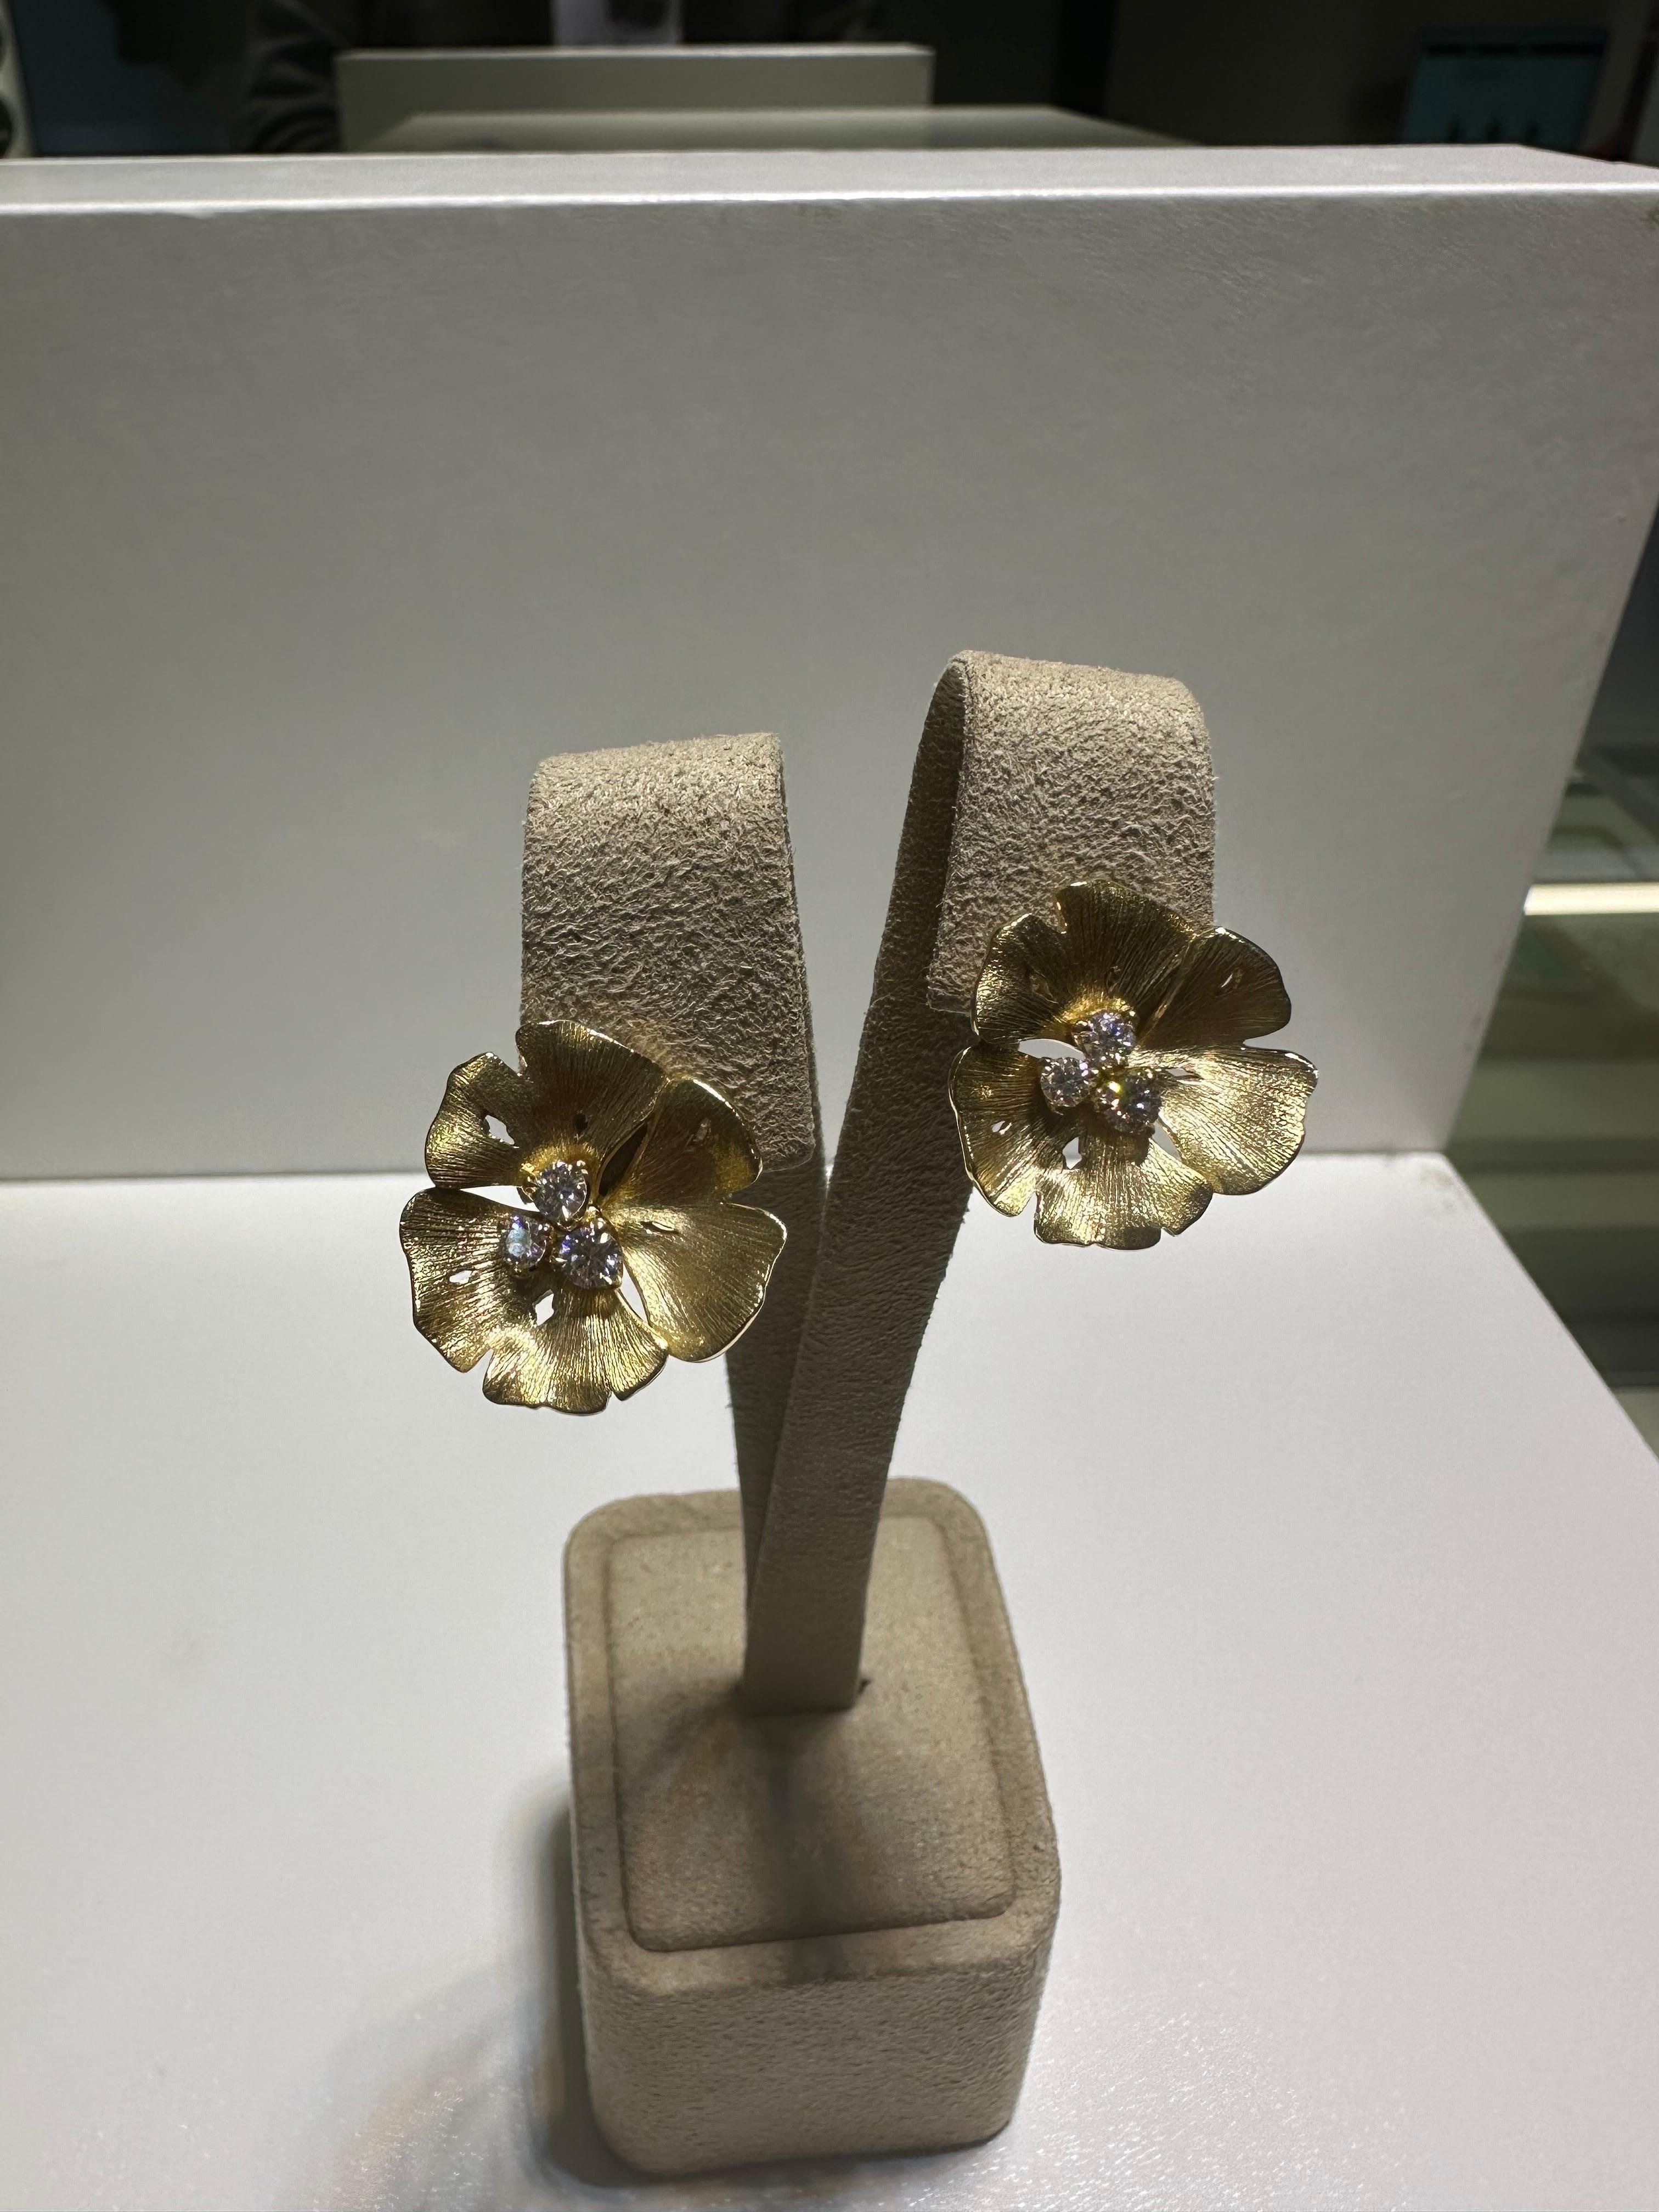 Brandneue Ohrringe aus dem französischen Schmuckhaus Vever. Die Ohrringe sind aus 18-karätigem Gelbgold gefertigt und mit 6 labgewachsenen Diamanten (0,26 ct) besetzt. 

Die Geschichte beginnt 1821 in Metz, Frankreich, als Pierre-Paul Vever seine